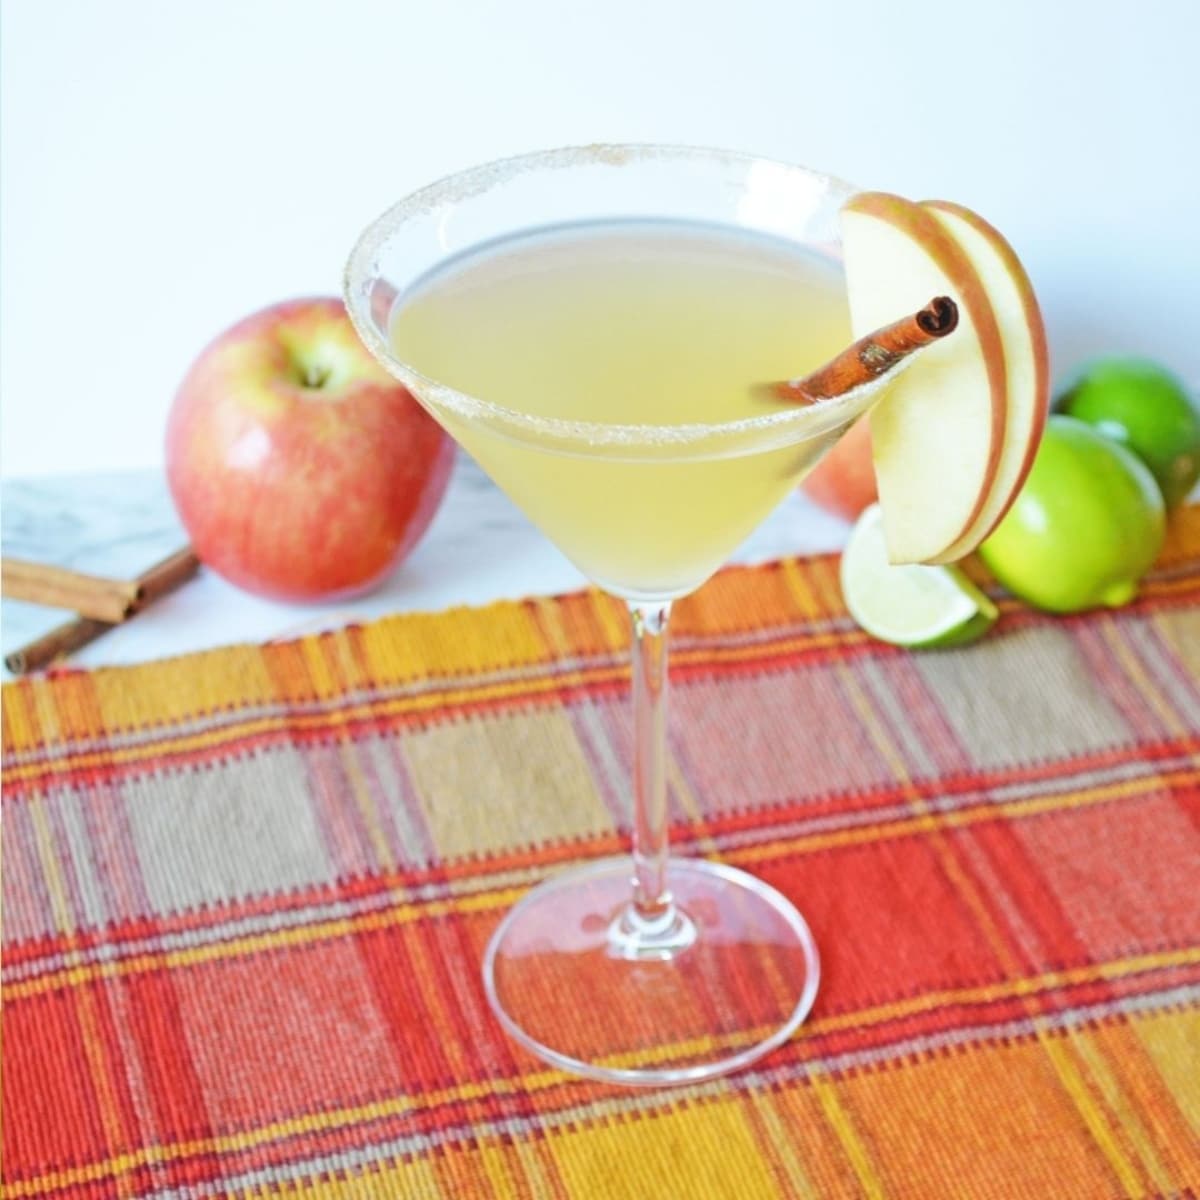 53 - social-media-photo-martini-recipes